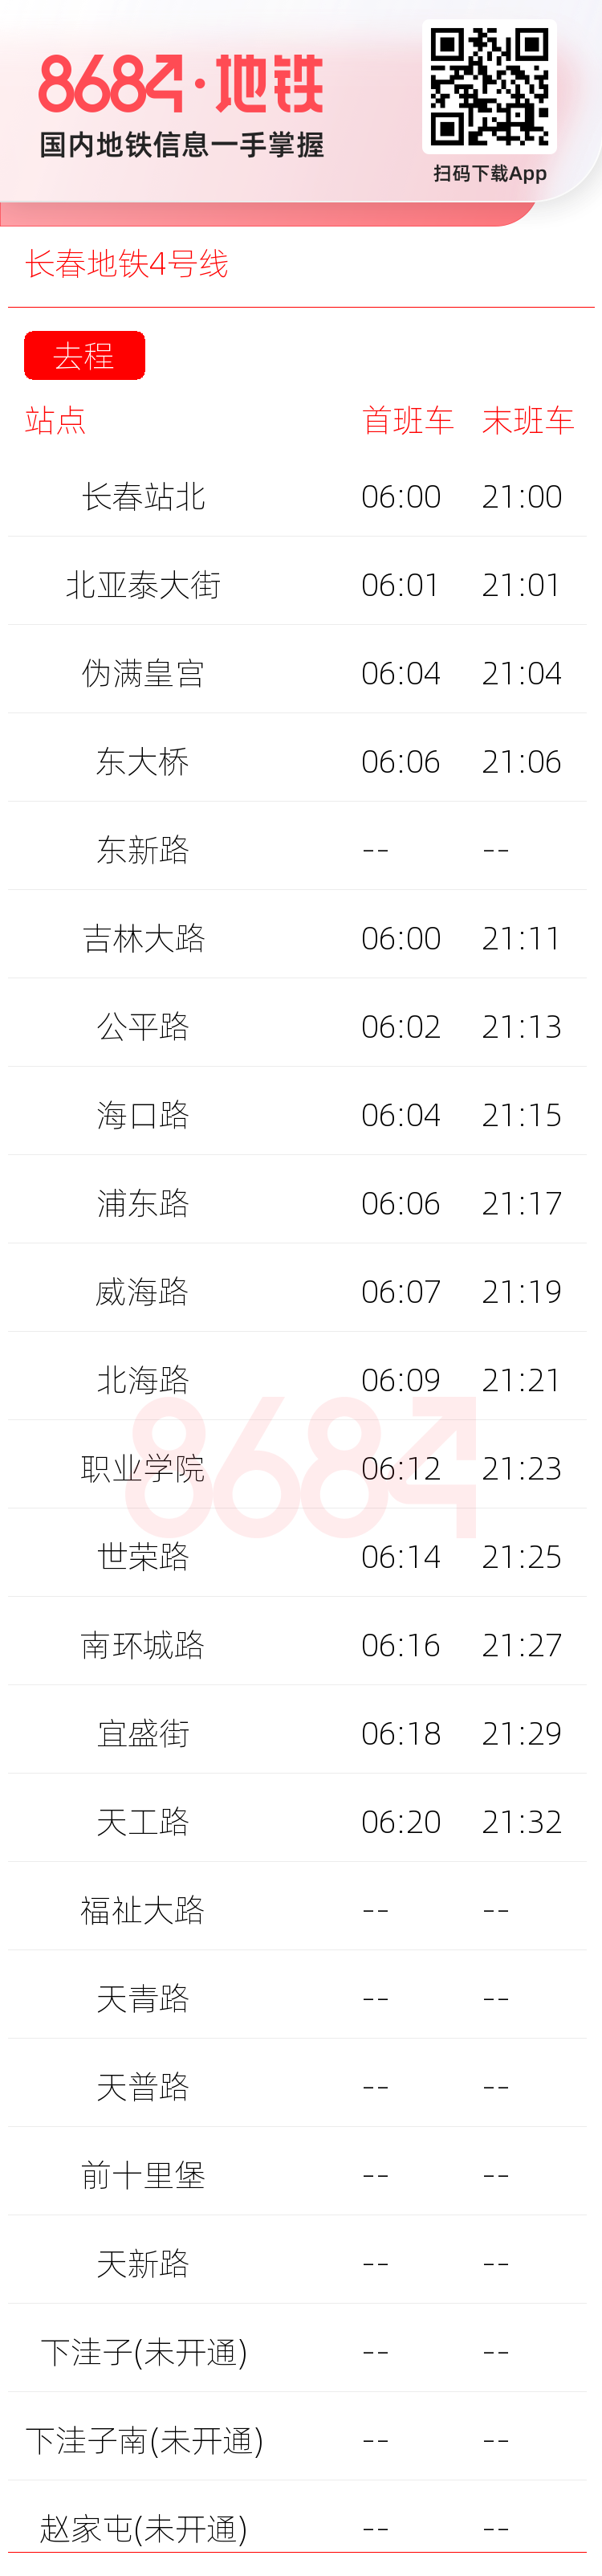 长春地铁4号线运营时间表